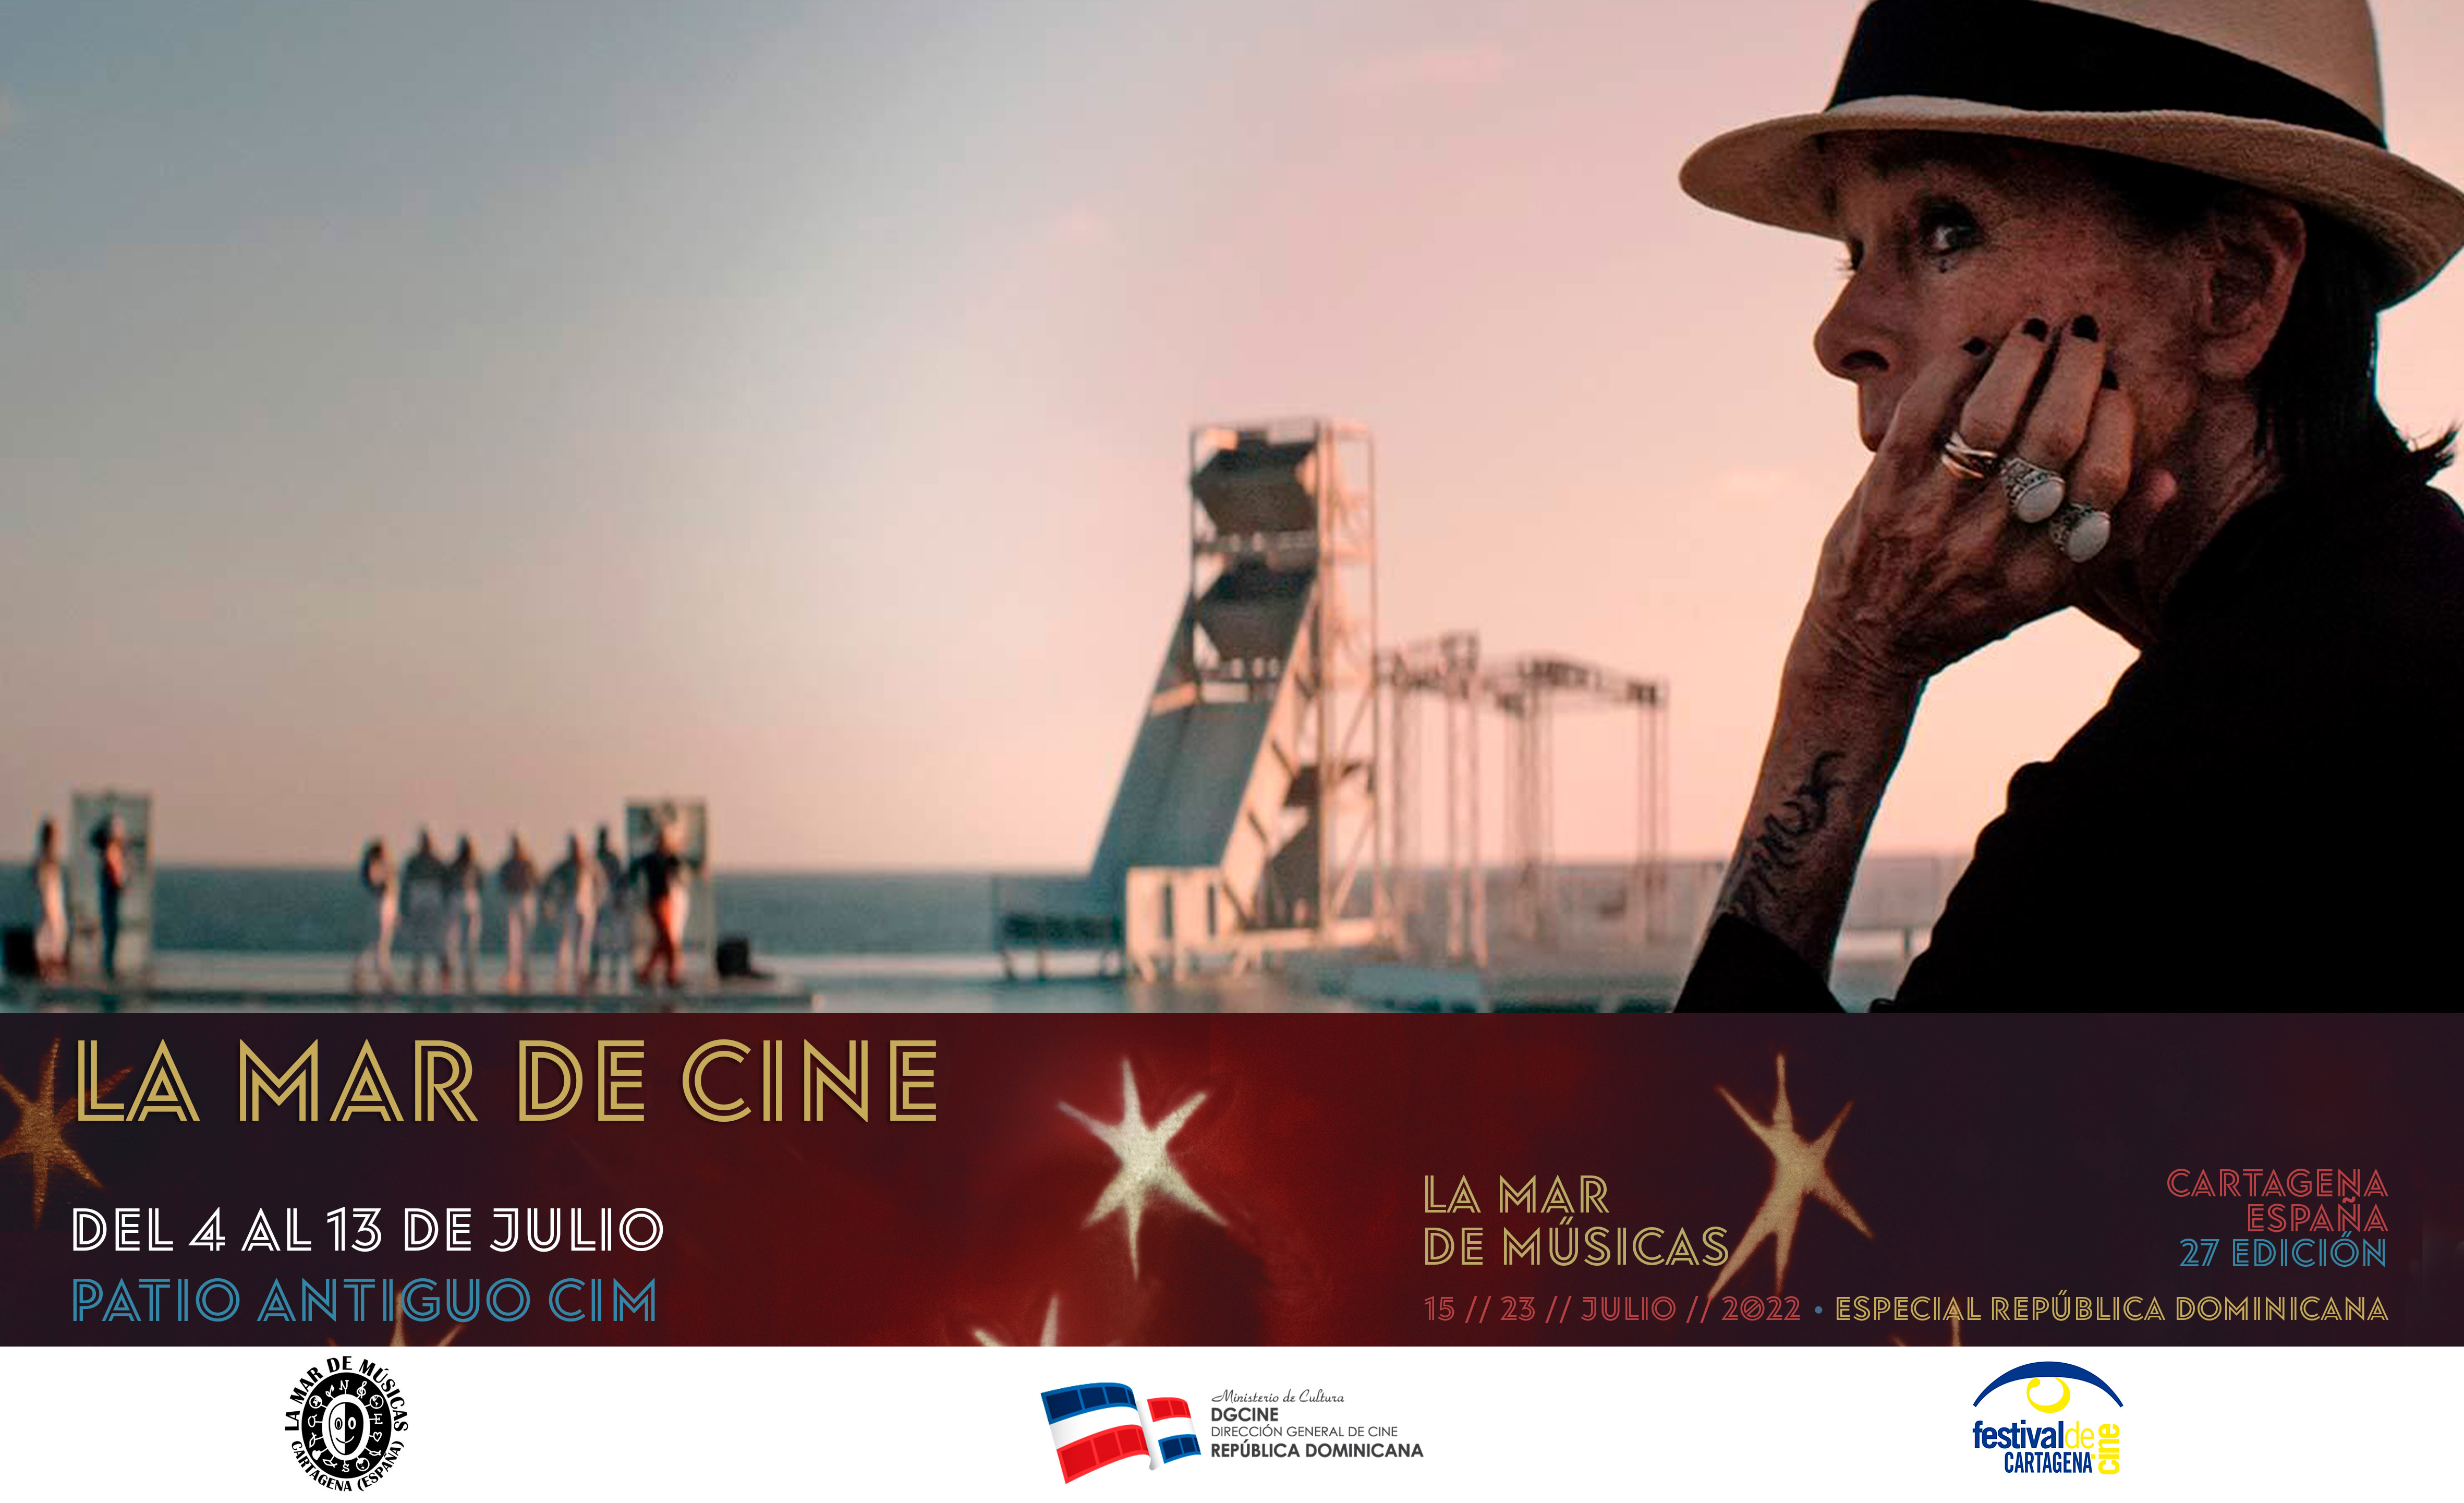 LA MAR DE CINE: SECCION CINEMATOGRAFICA DE LA MAR DE MUSICAS 2022